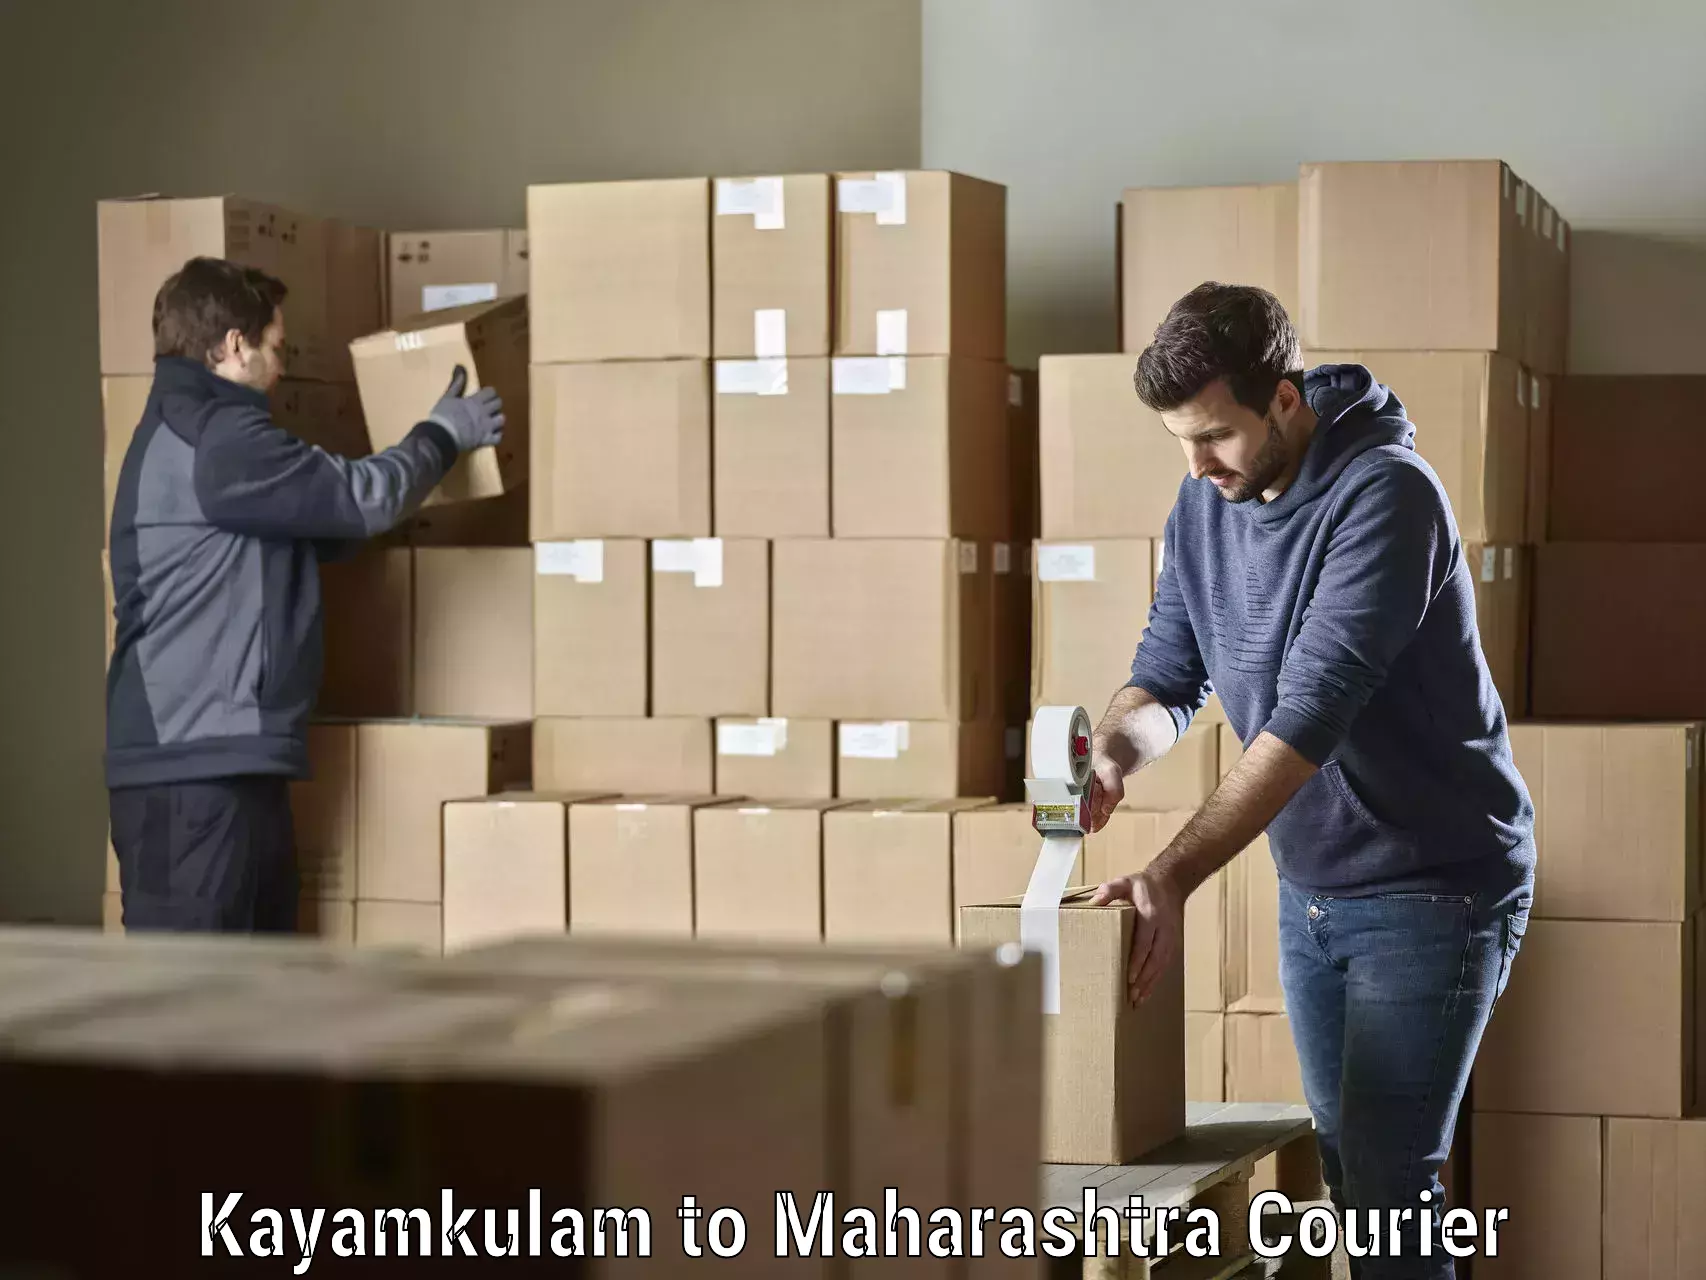 Same-day delivery solutions Kayamkulam to Pandharpur